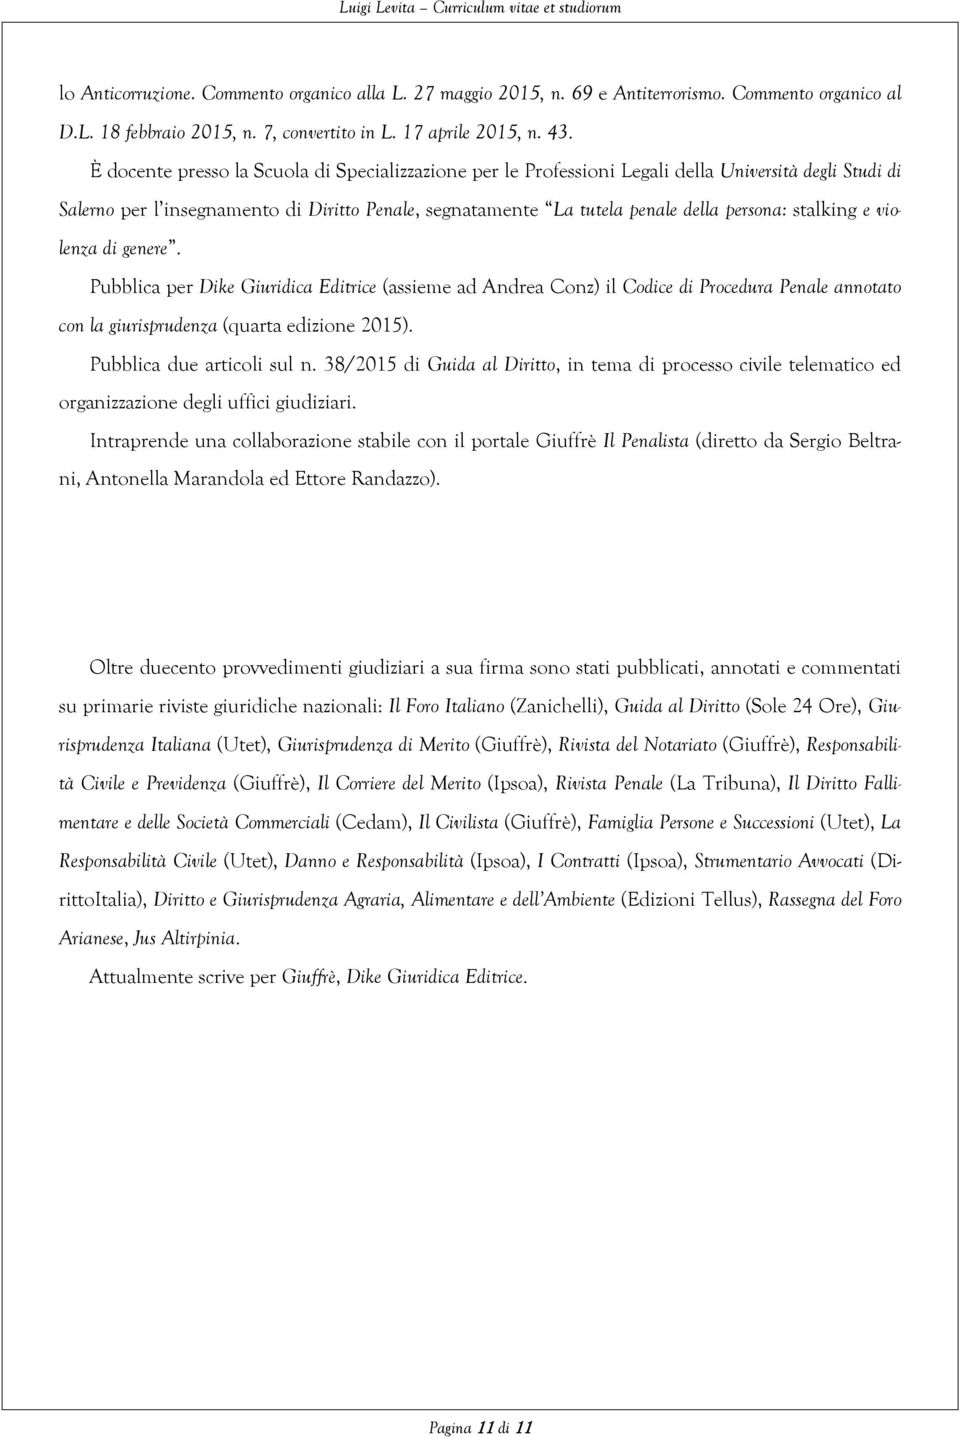 stalking e violenza di genere. Pubblica per Dike Giuridica Editrice (assieme ad Andrea Conz) il Codice di Procedura Penale annotato con la giurisprudenza (quarta edizione 2015).